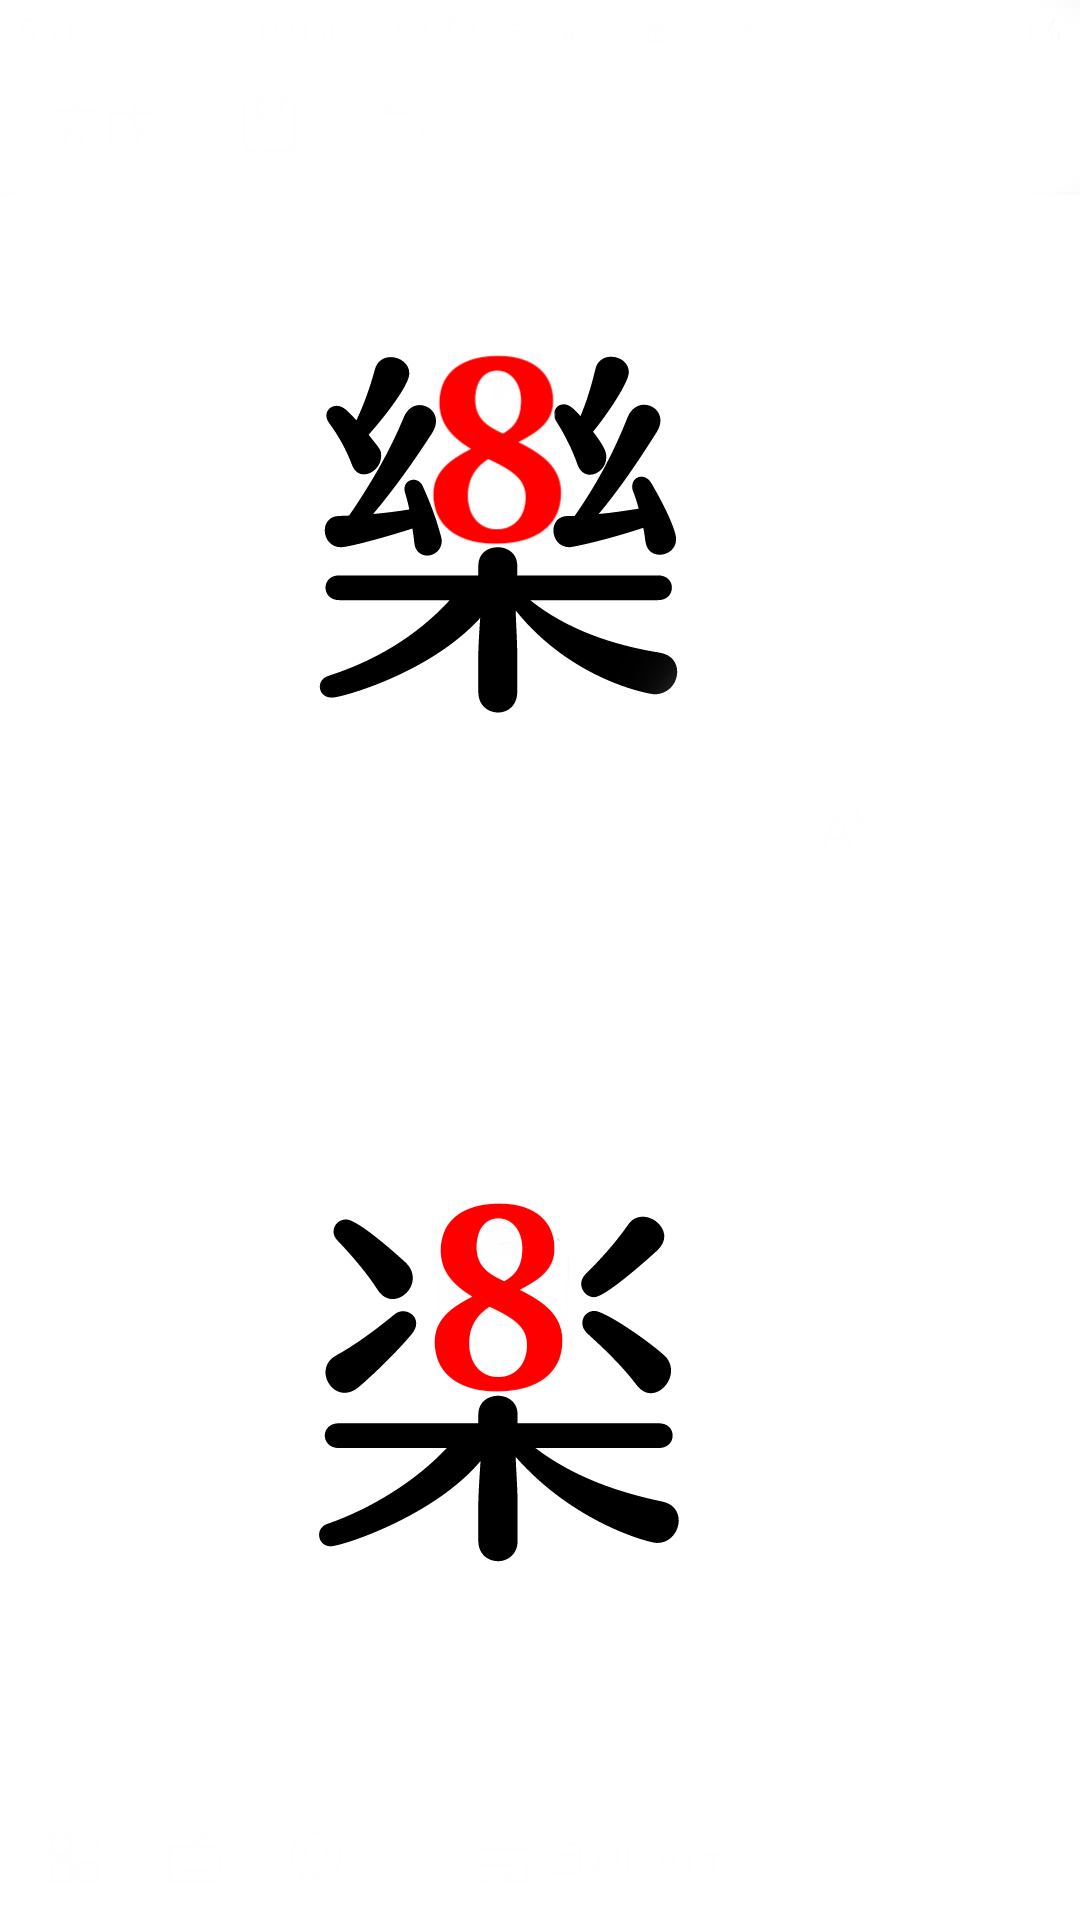 2018 年元旦支付宝首页「新年快楽」使用日本新字体「楽」而非中文繁体「乐」是否属于汉字的不规范使用?